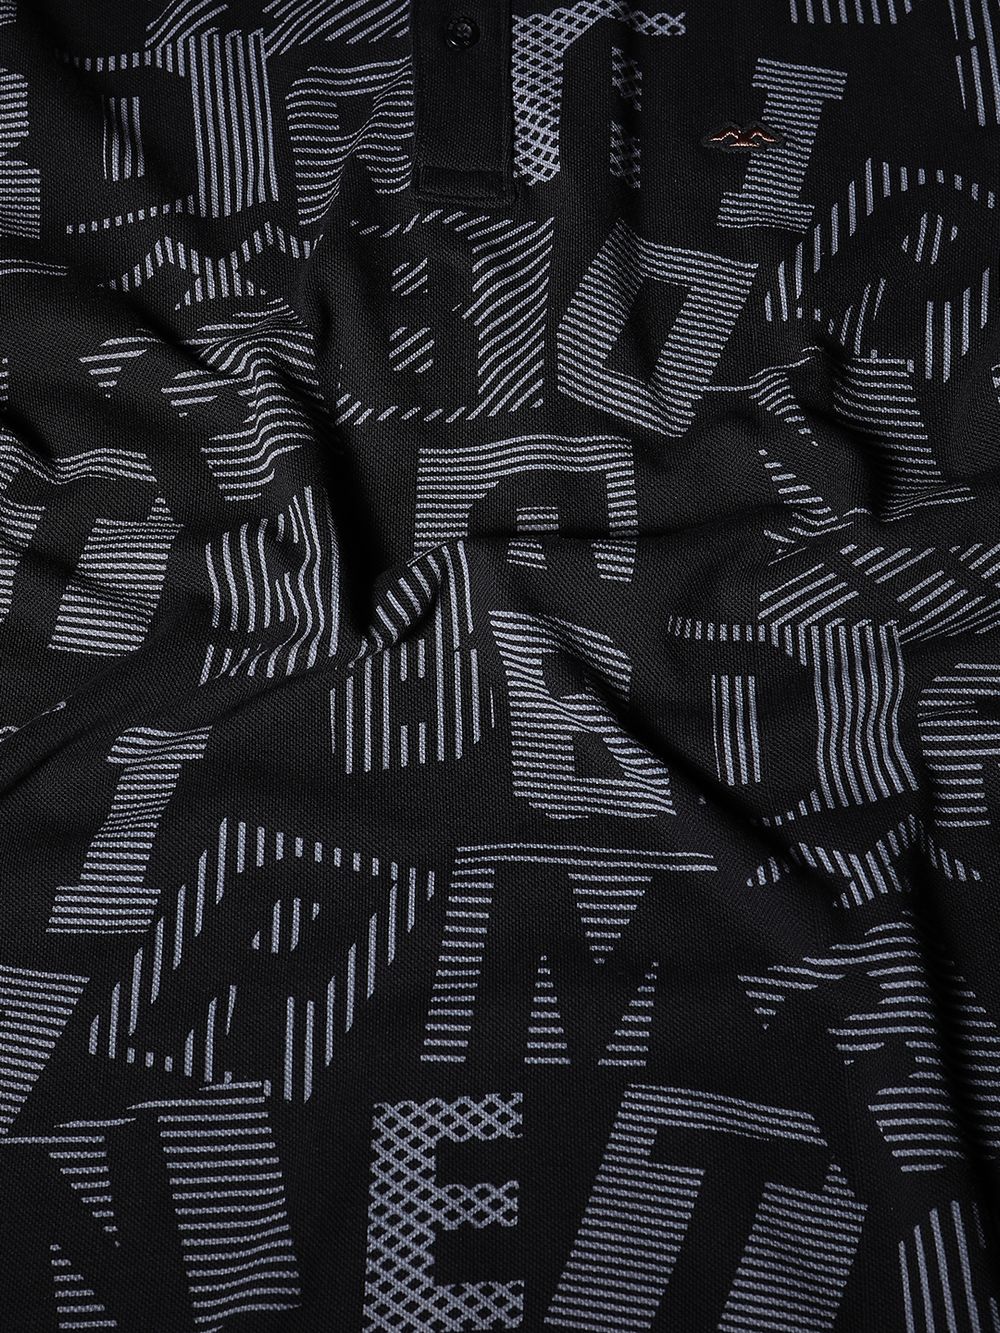 Black & Grey Abstract Print Pique Polo T-Shirt